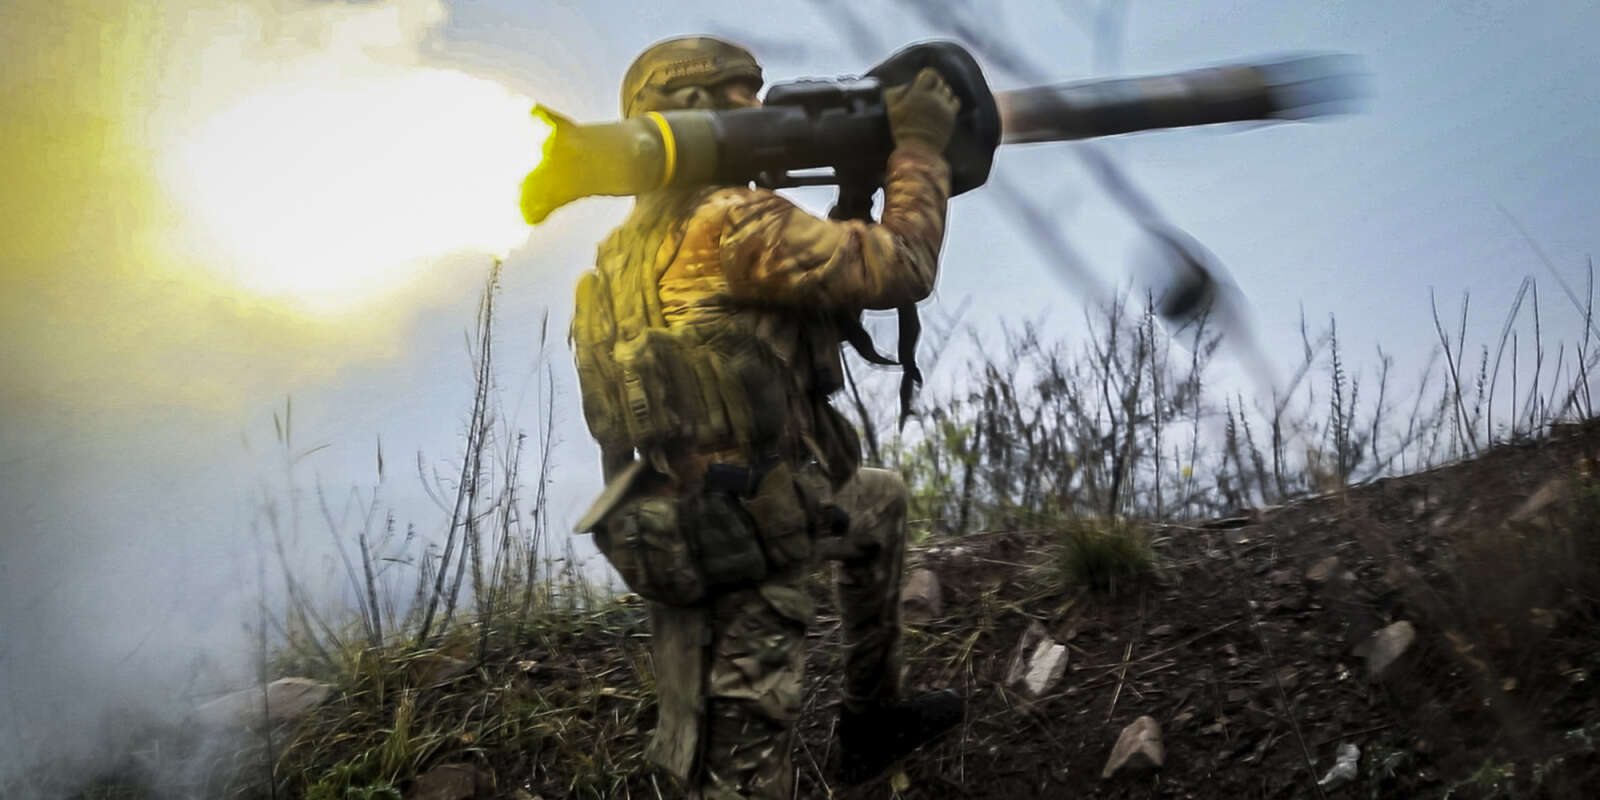 Un soldat ukrainien tire un missile antichar dans un lieu tenu secret dans l’oblast de Donetsk, en Ukraine, le 17 novembre 2022.